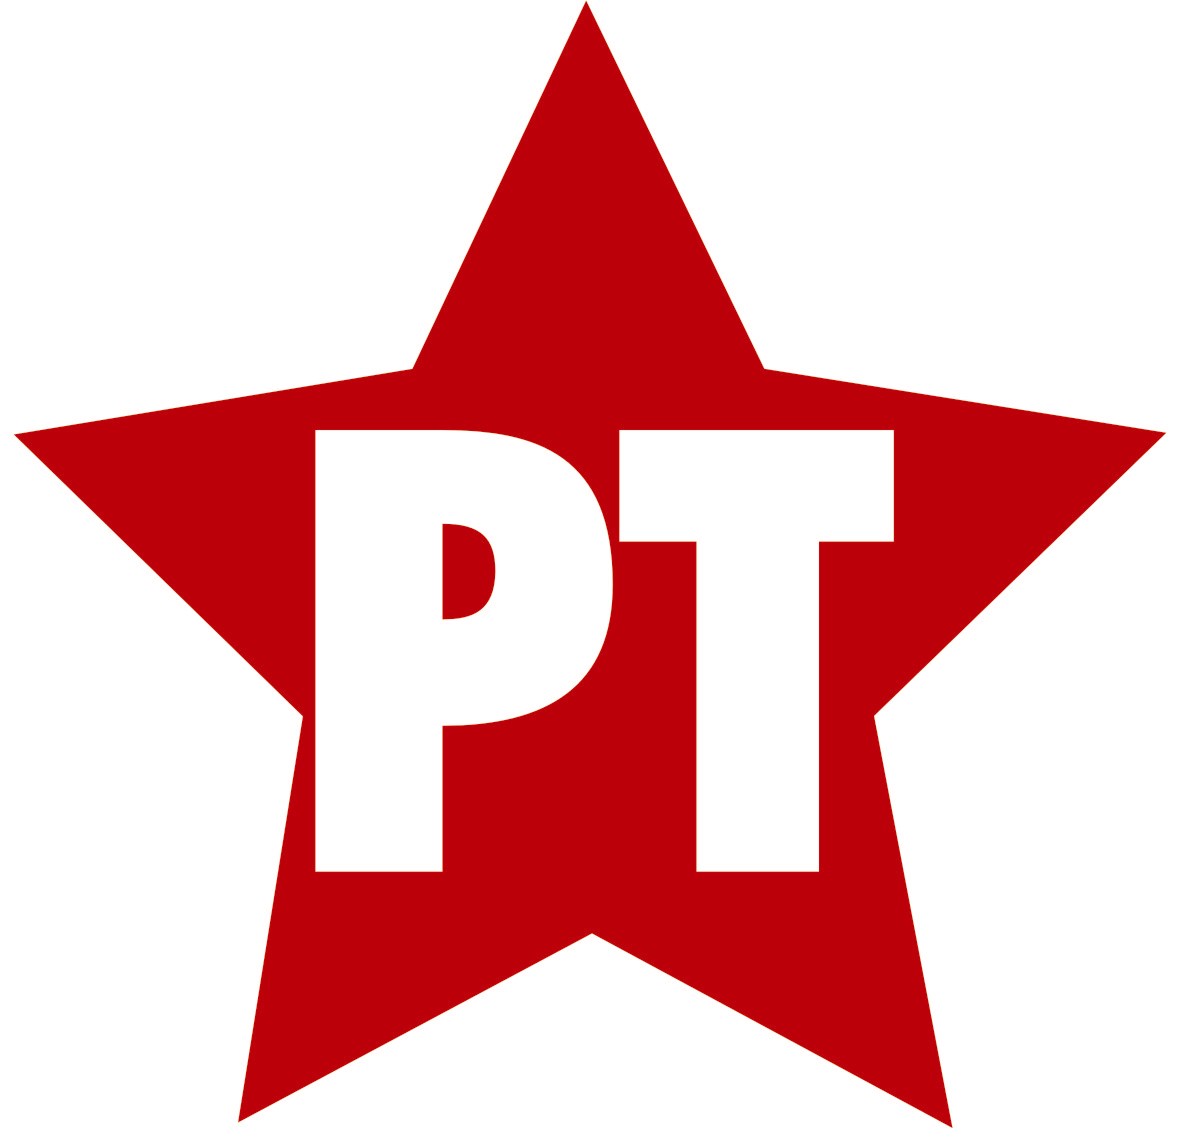 Logo Pt / Pindad (perusahaan) - Wikipedia bahasa Indonesia